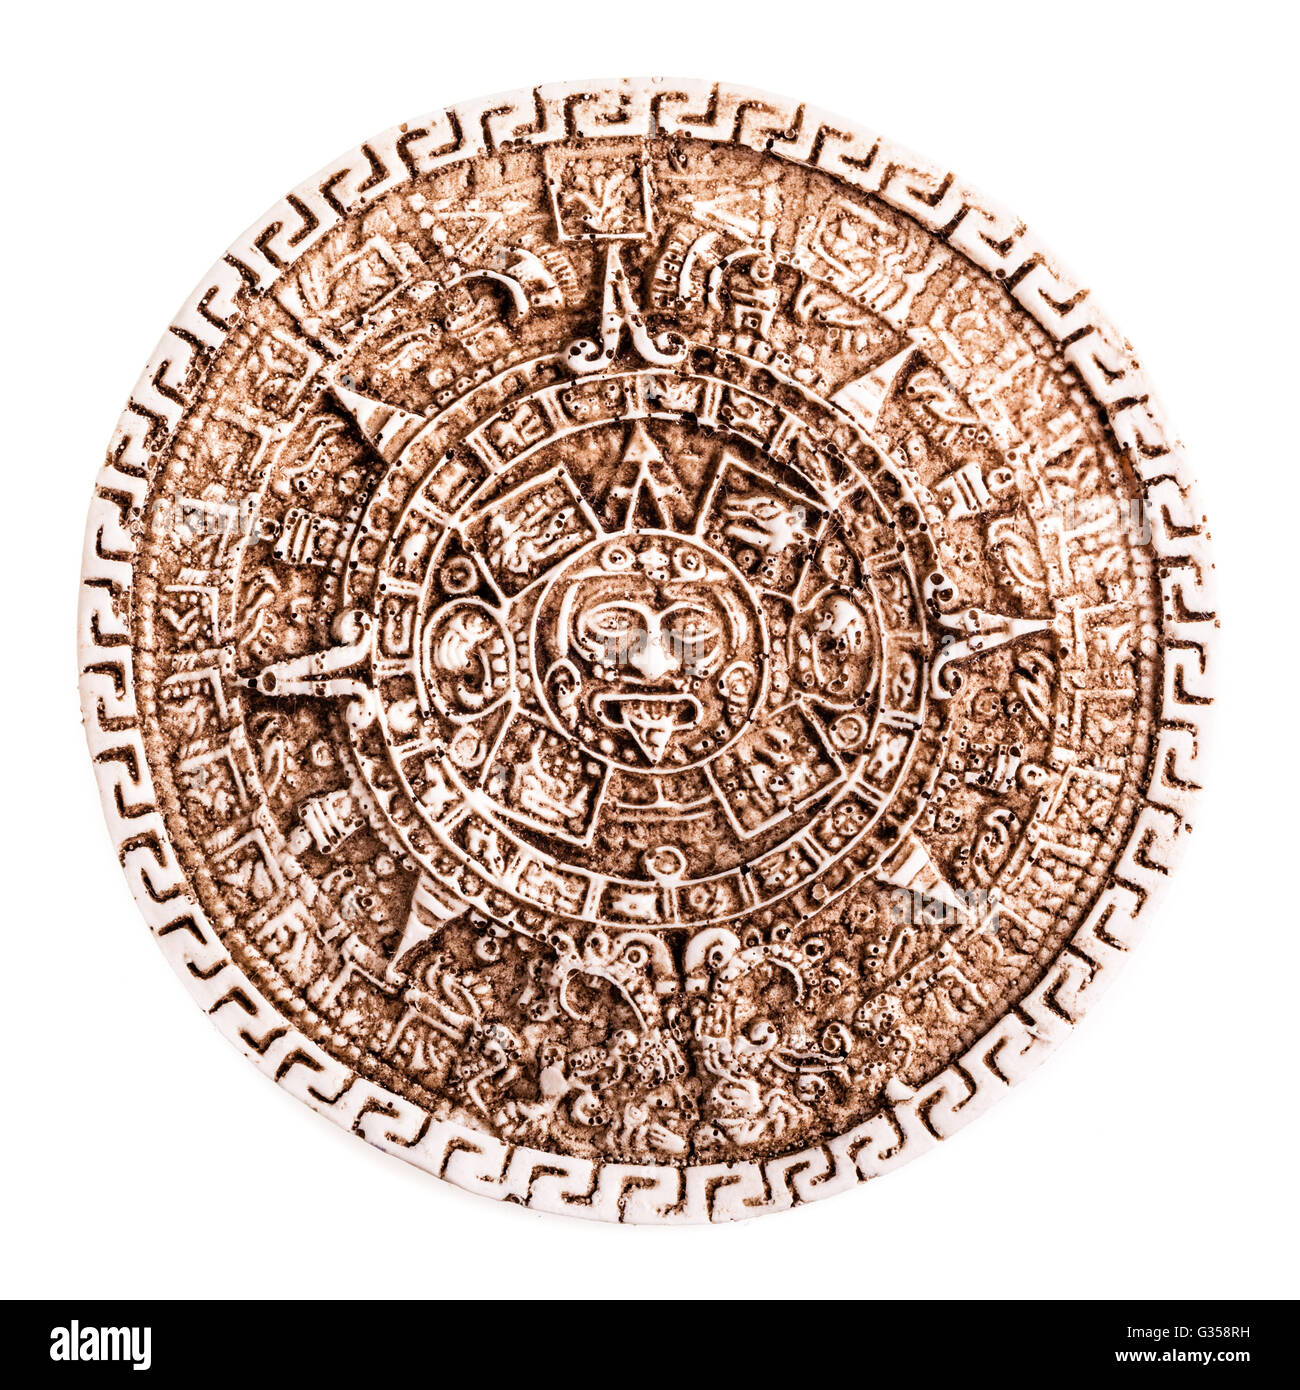 Сюжет и композиция произведения календарь майя ледермана